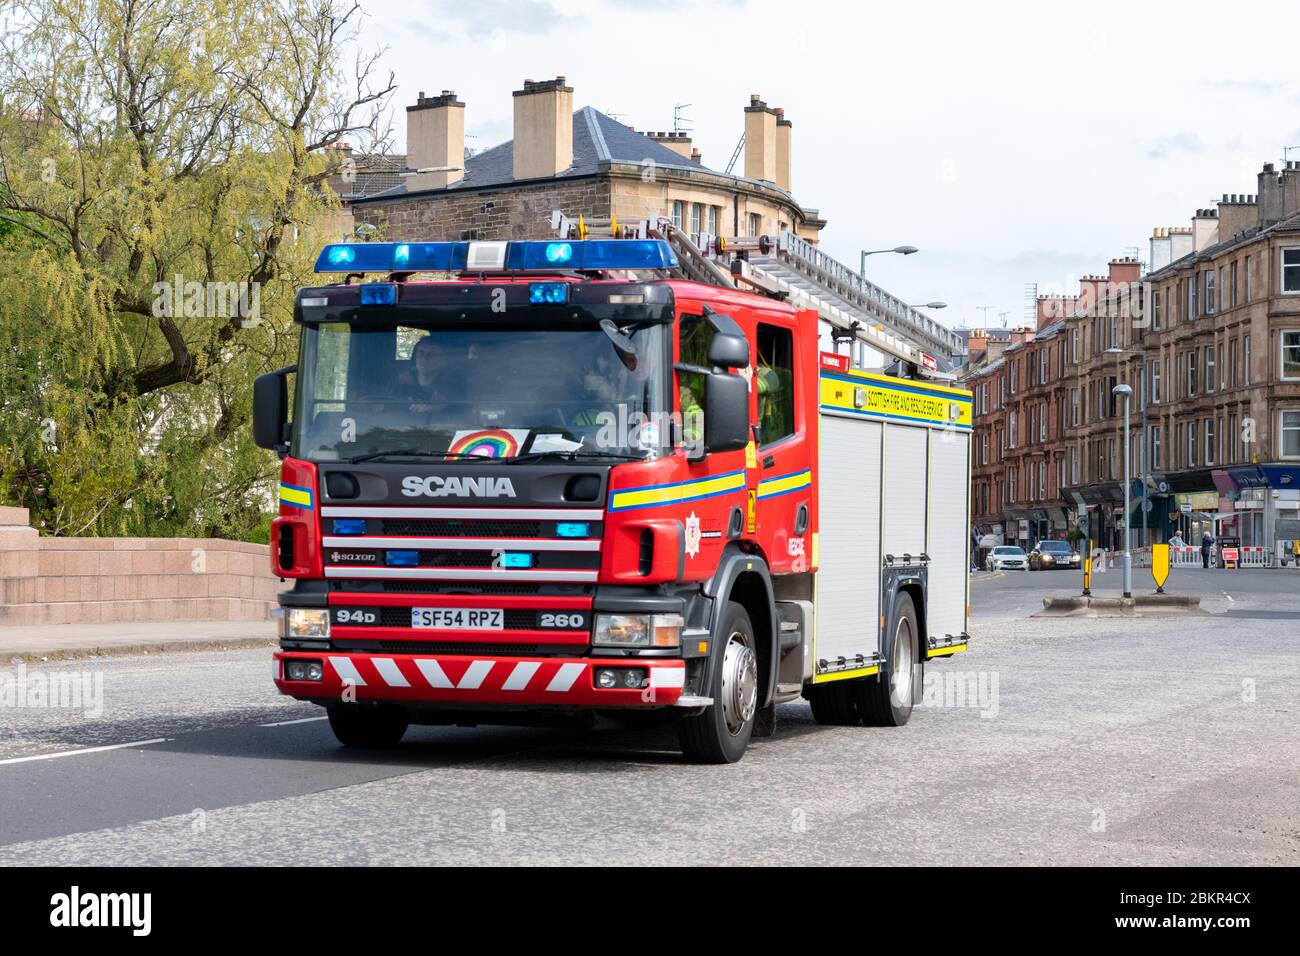 Motore antincendio con luci blu che rispondono a un'emergenza durante il blocco dei coronavirus, Glasgow, Scozia, Regno Unito - con immagine dell'arcobaleno sul parabrezza Foto Stock